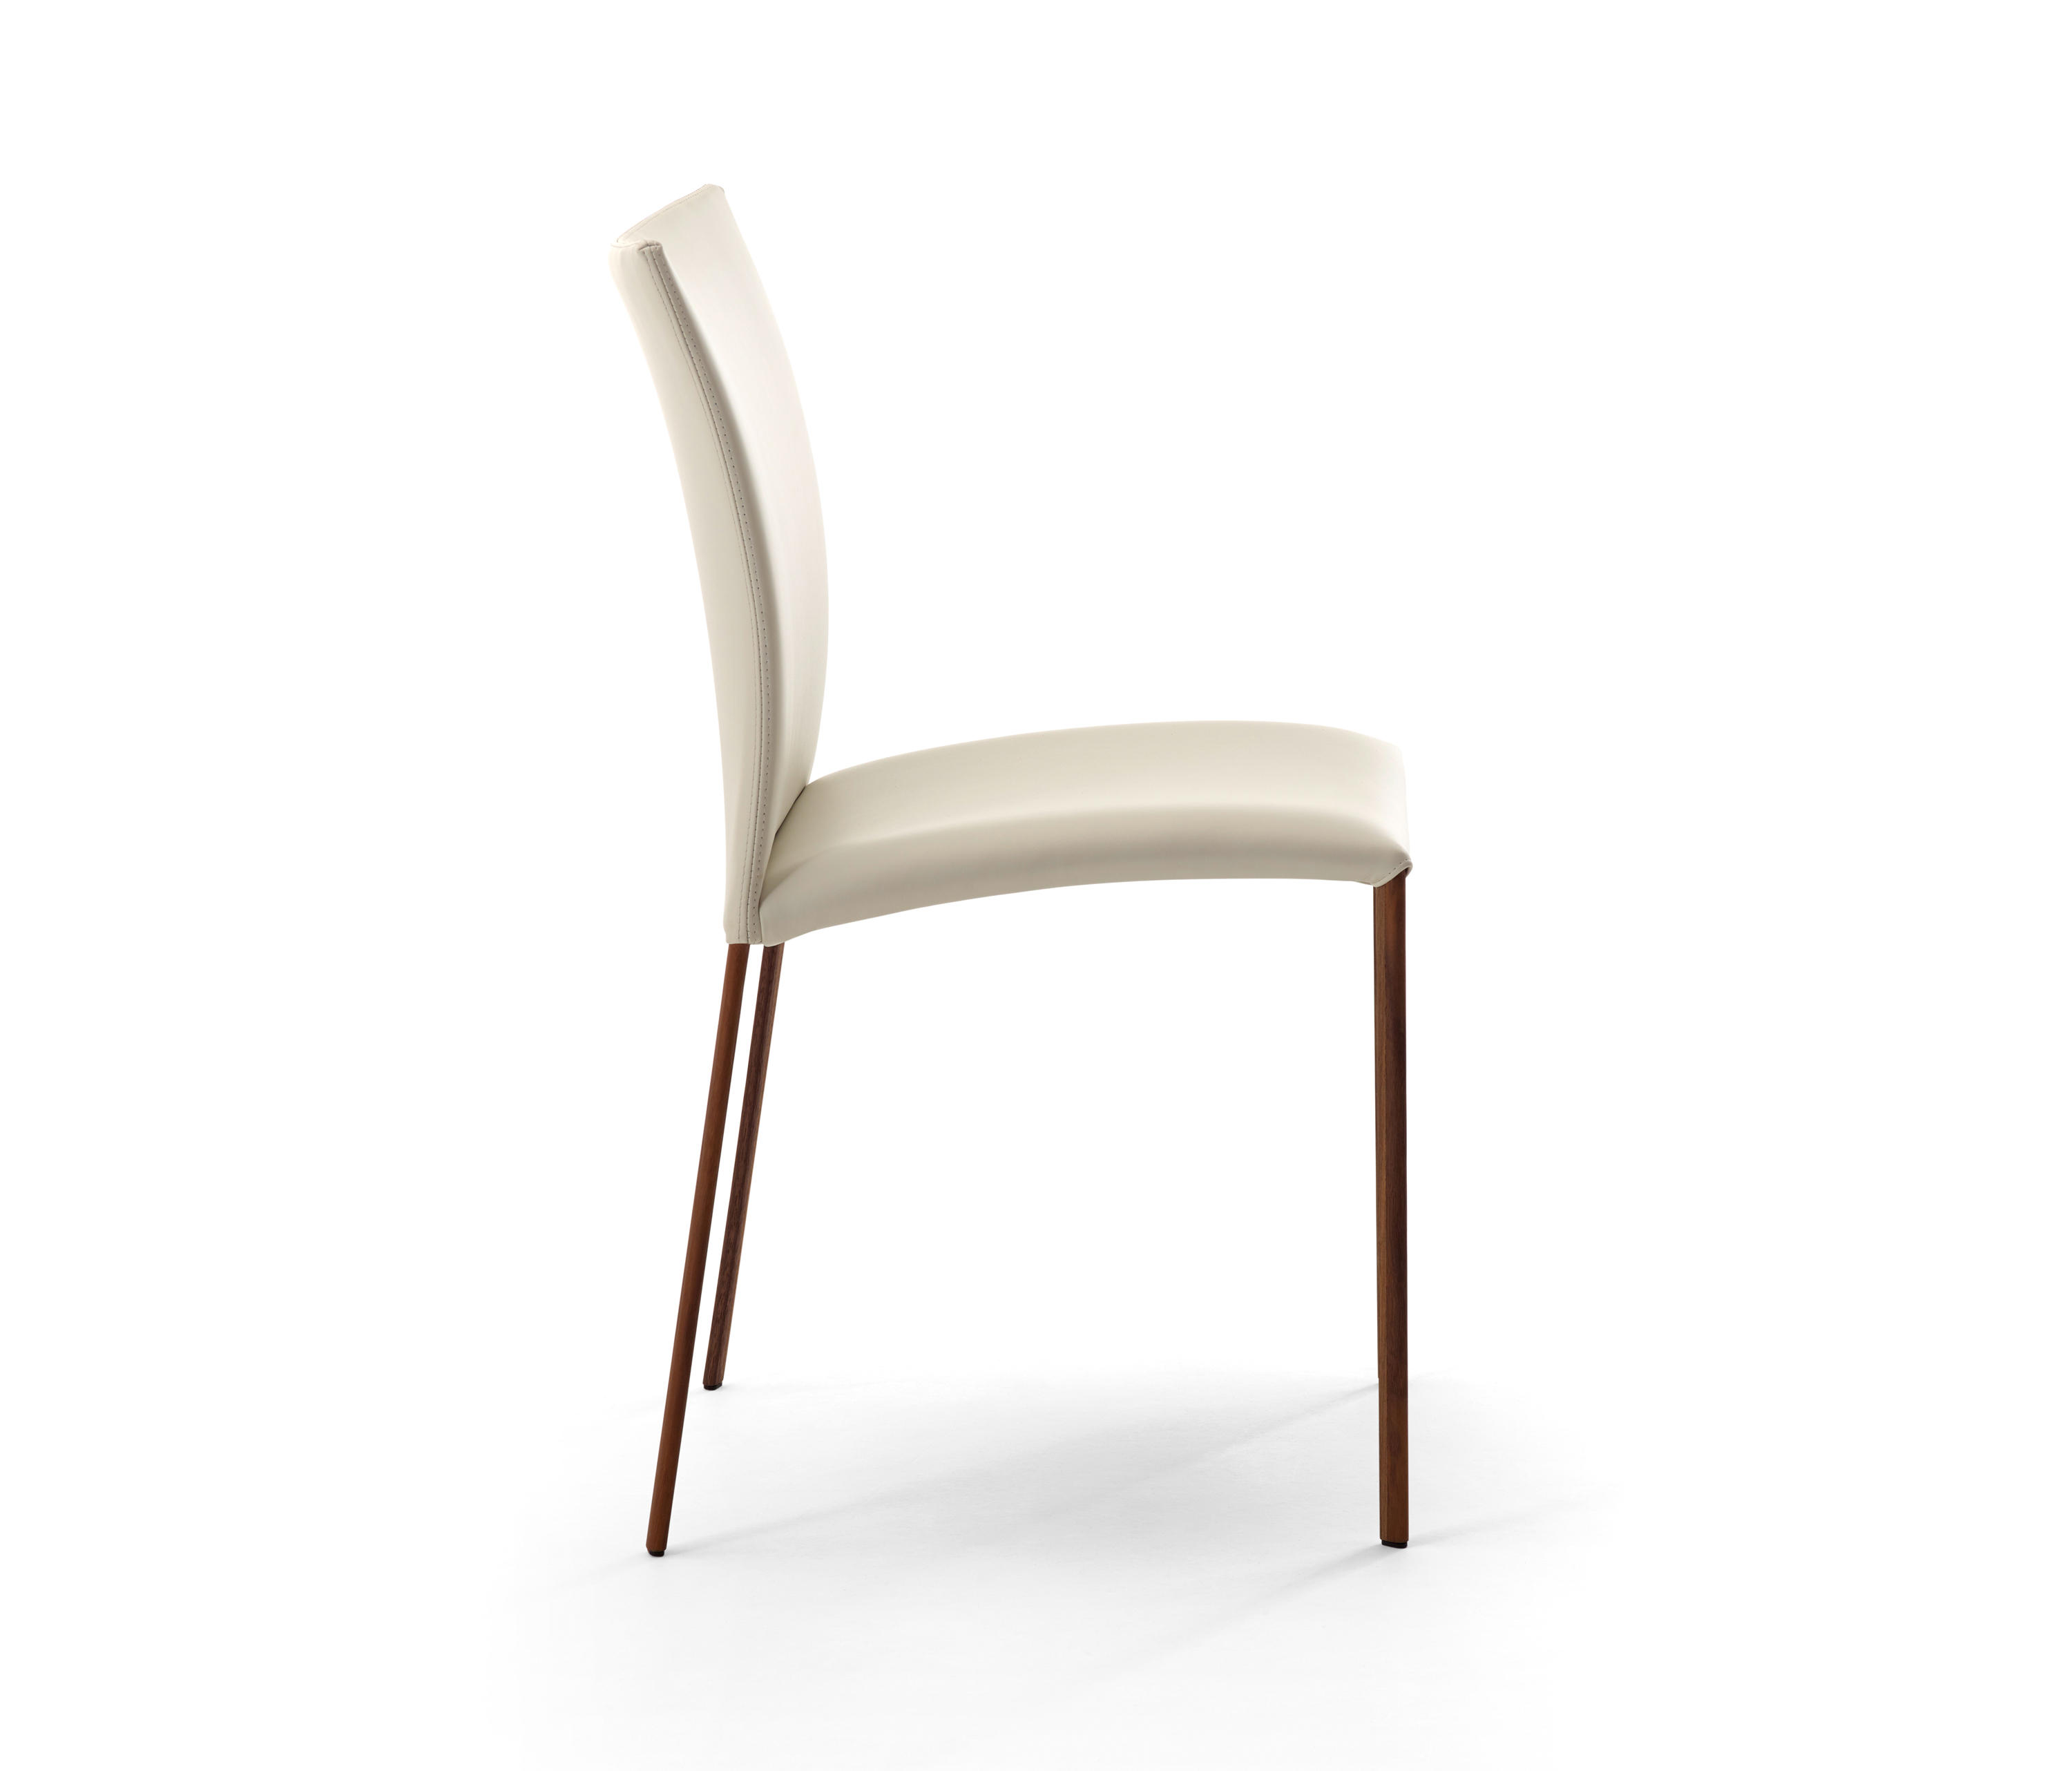 NOBILE Soft Chair by Draenert